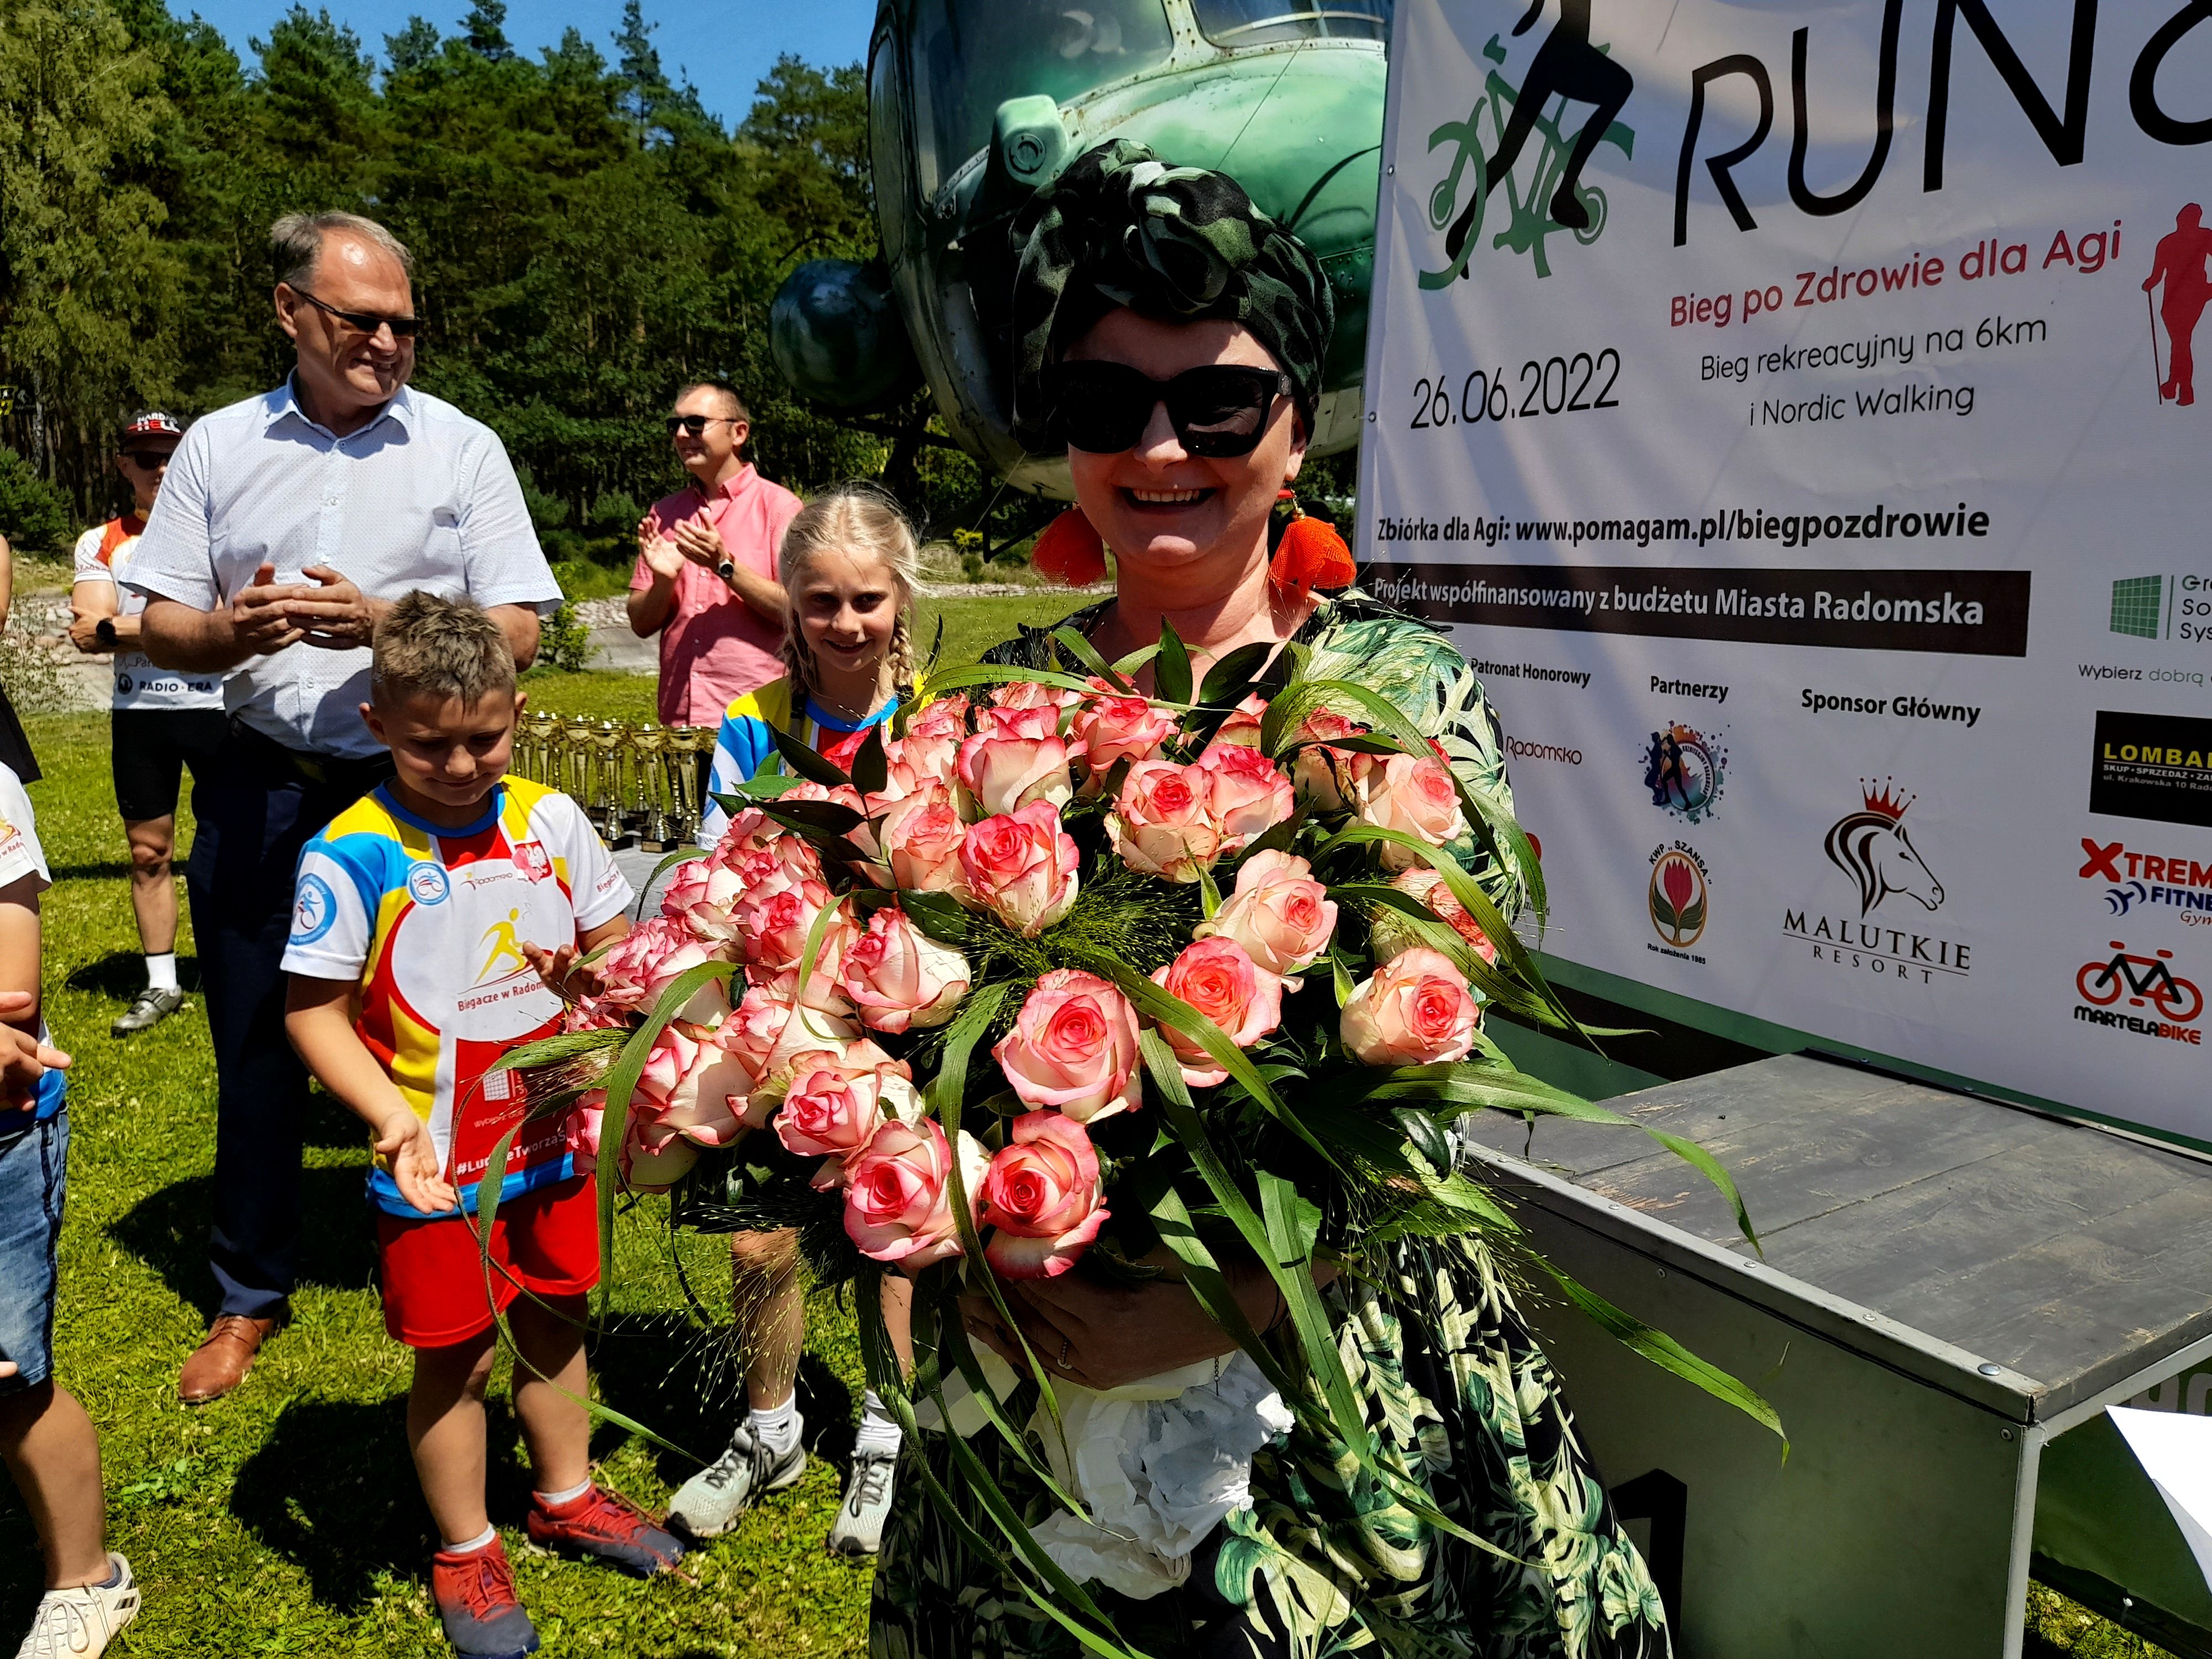 Malutkie Resort Run&Bike i charytatywny bieg dla Agi